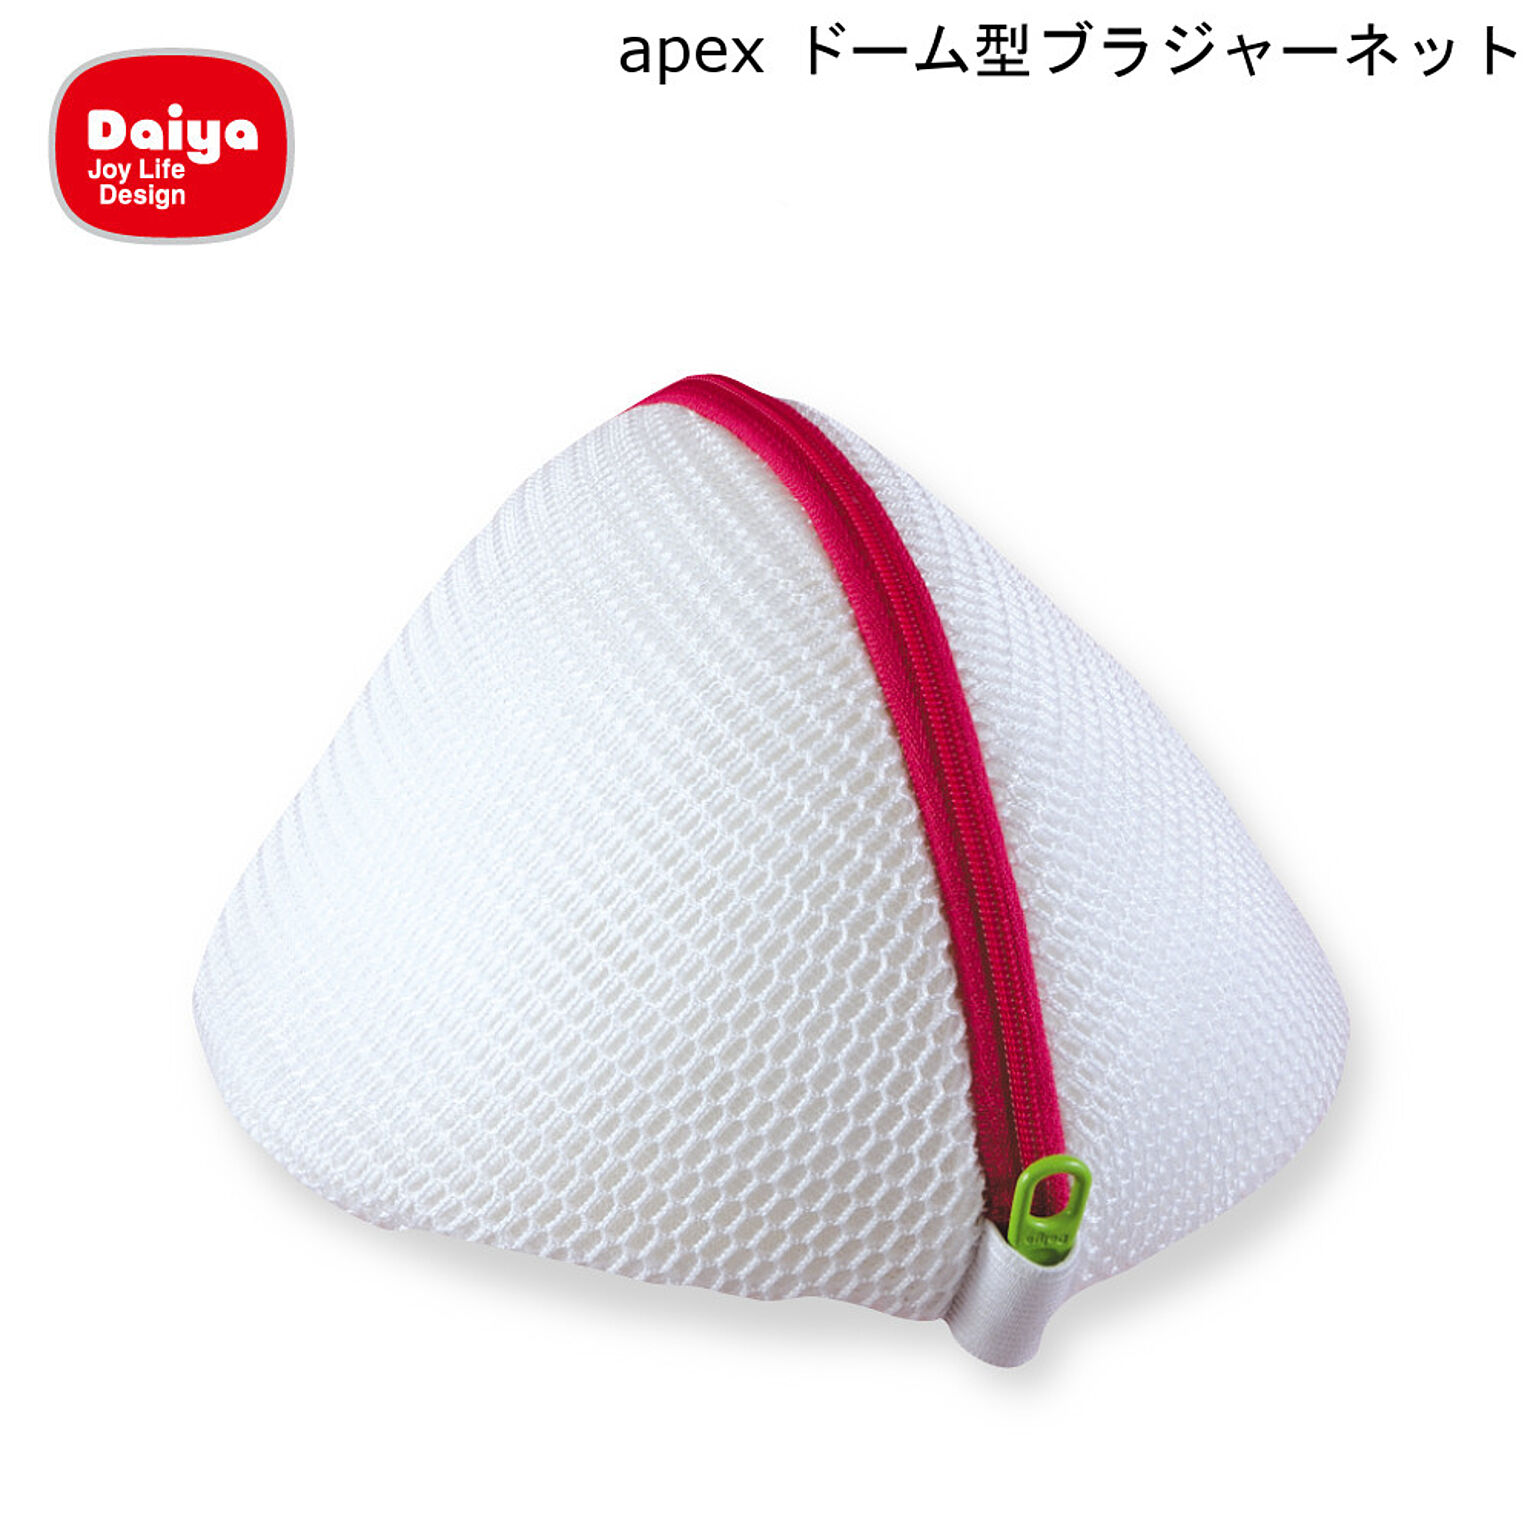 apex ドーム型 ブラジャーネット ダイヤ Daiya